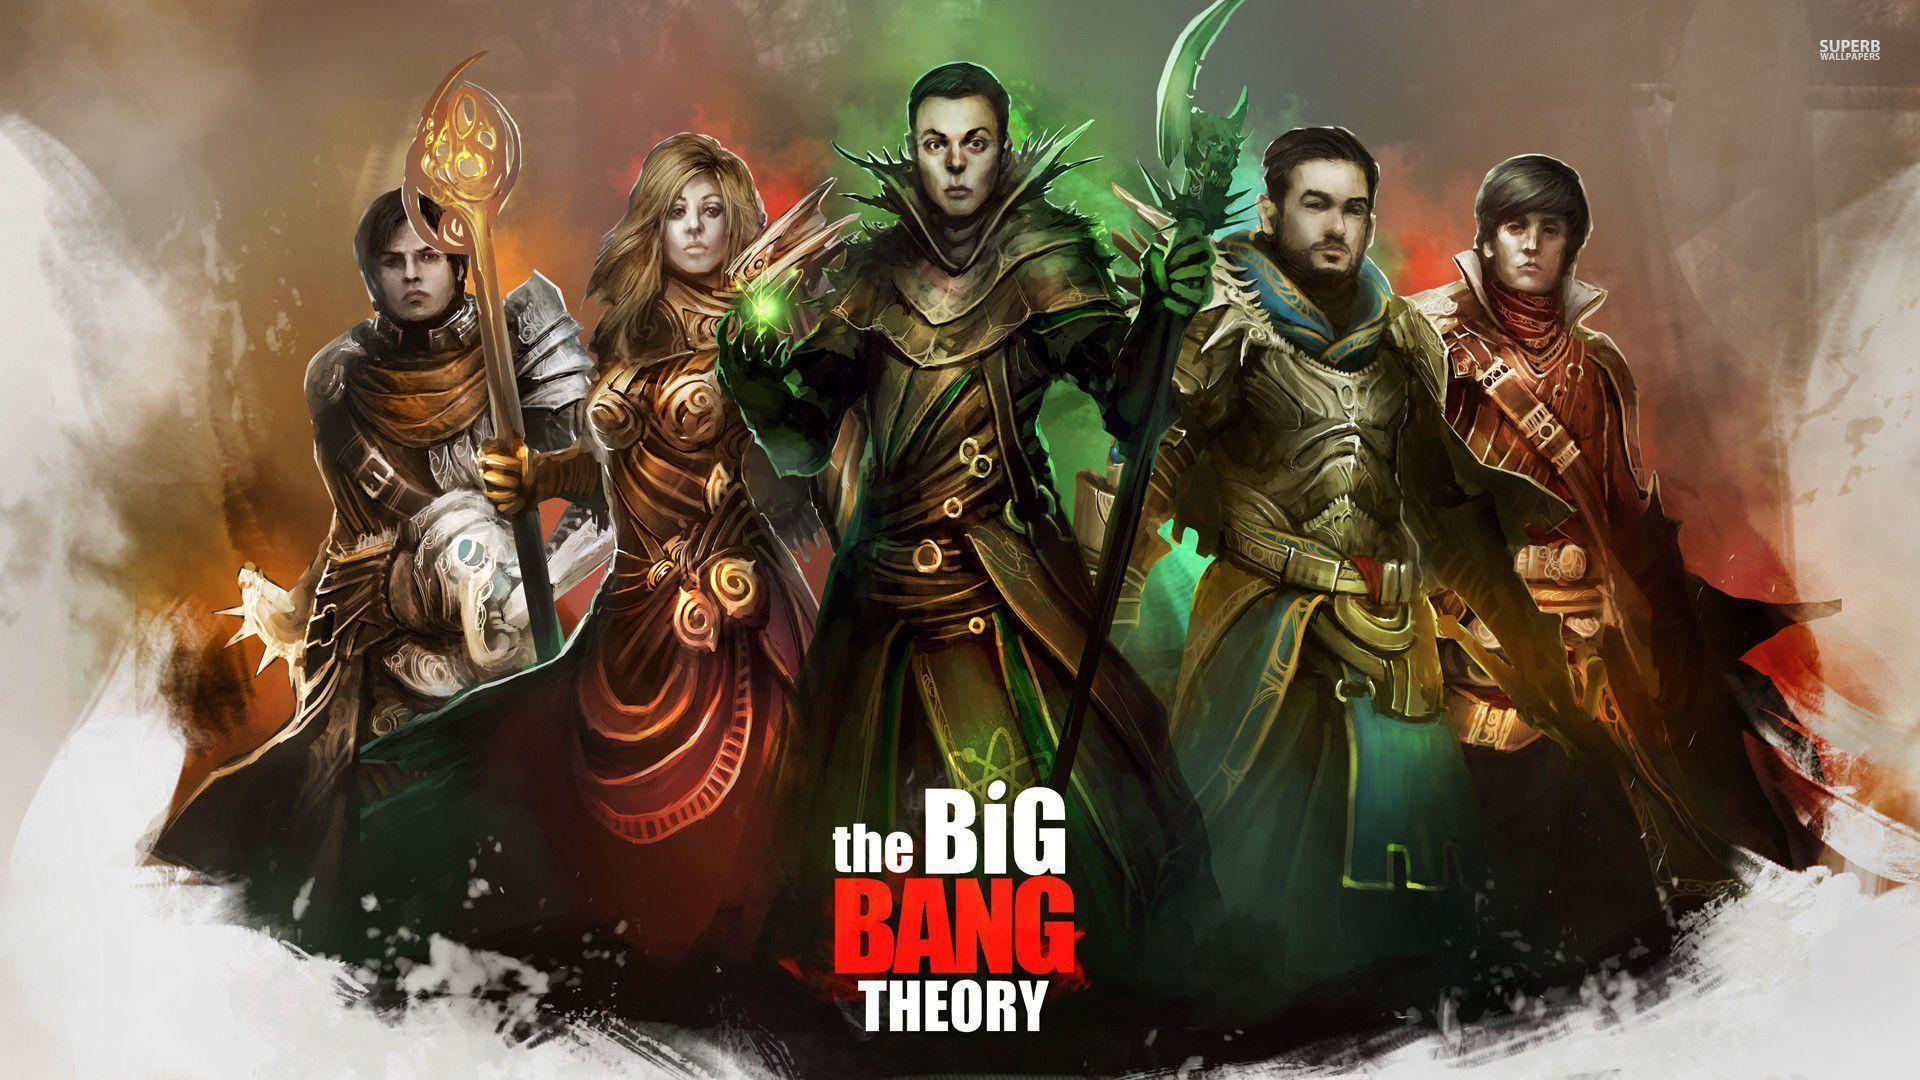 The Big Bang Theory 20634 1920x1080 The Big Bang Theory Wallpaper